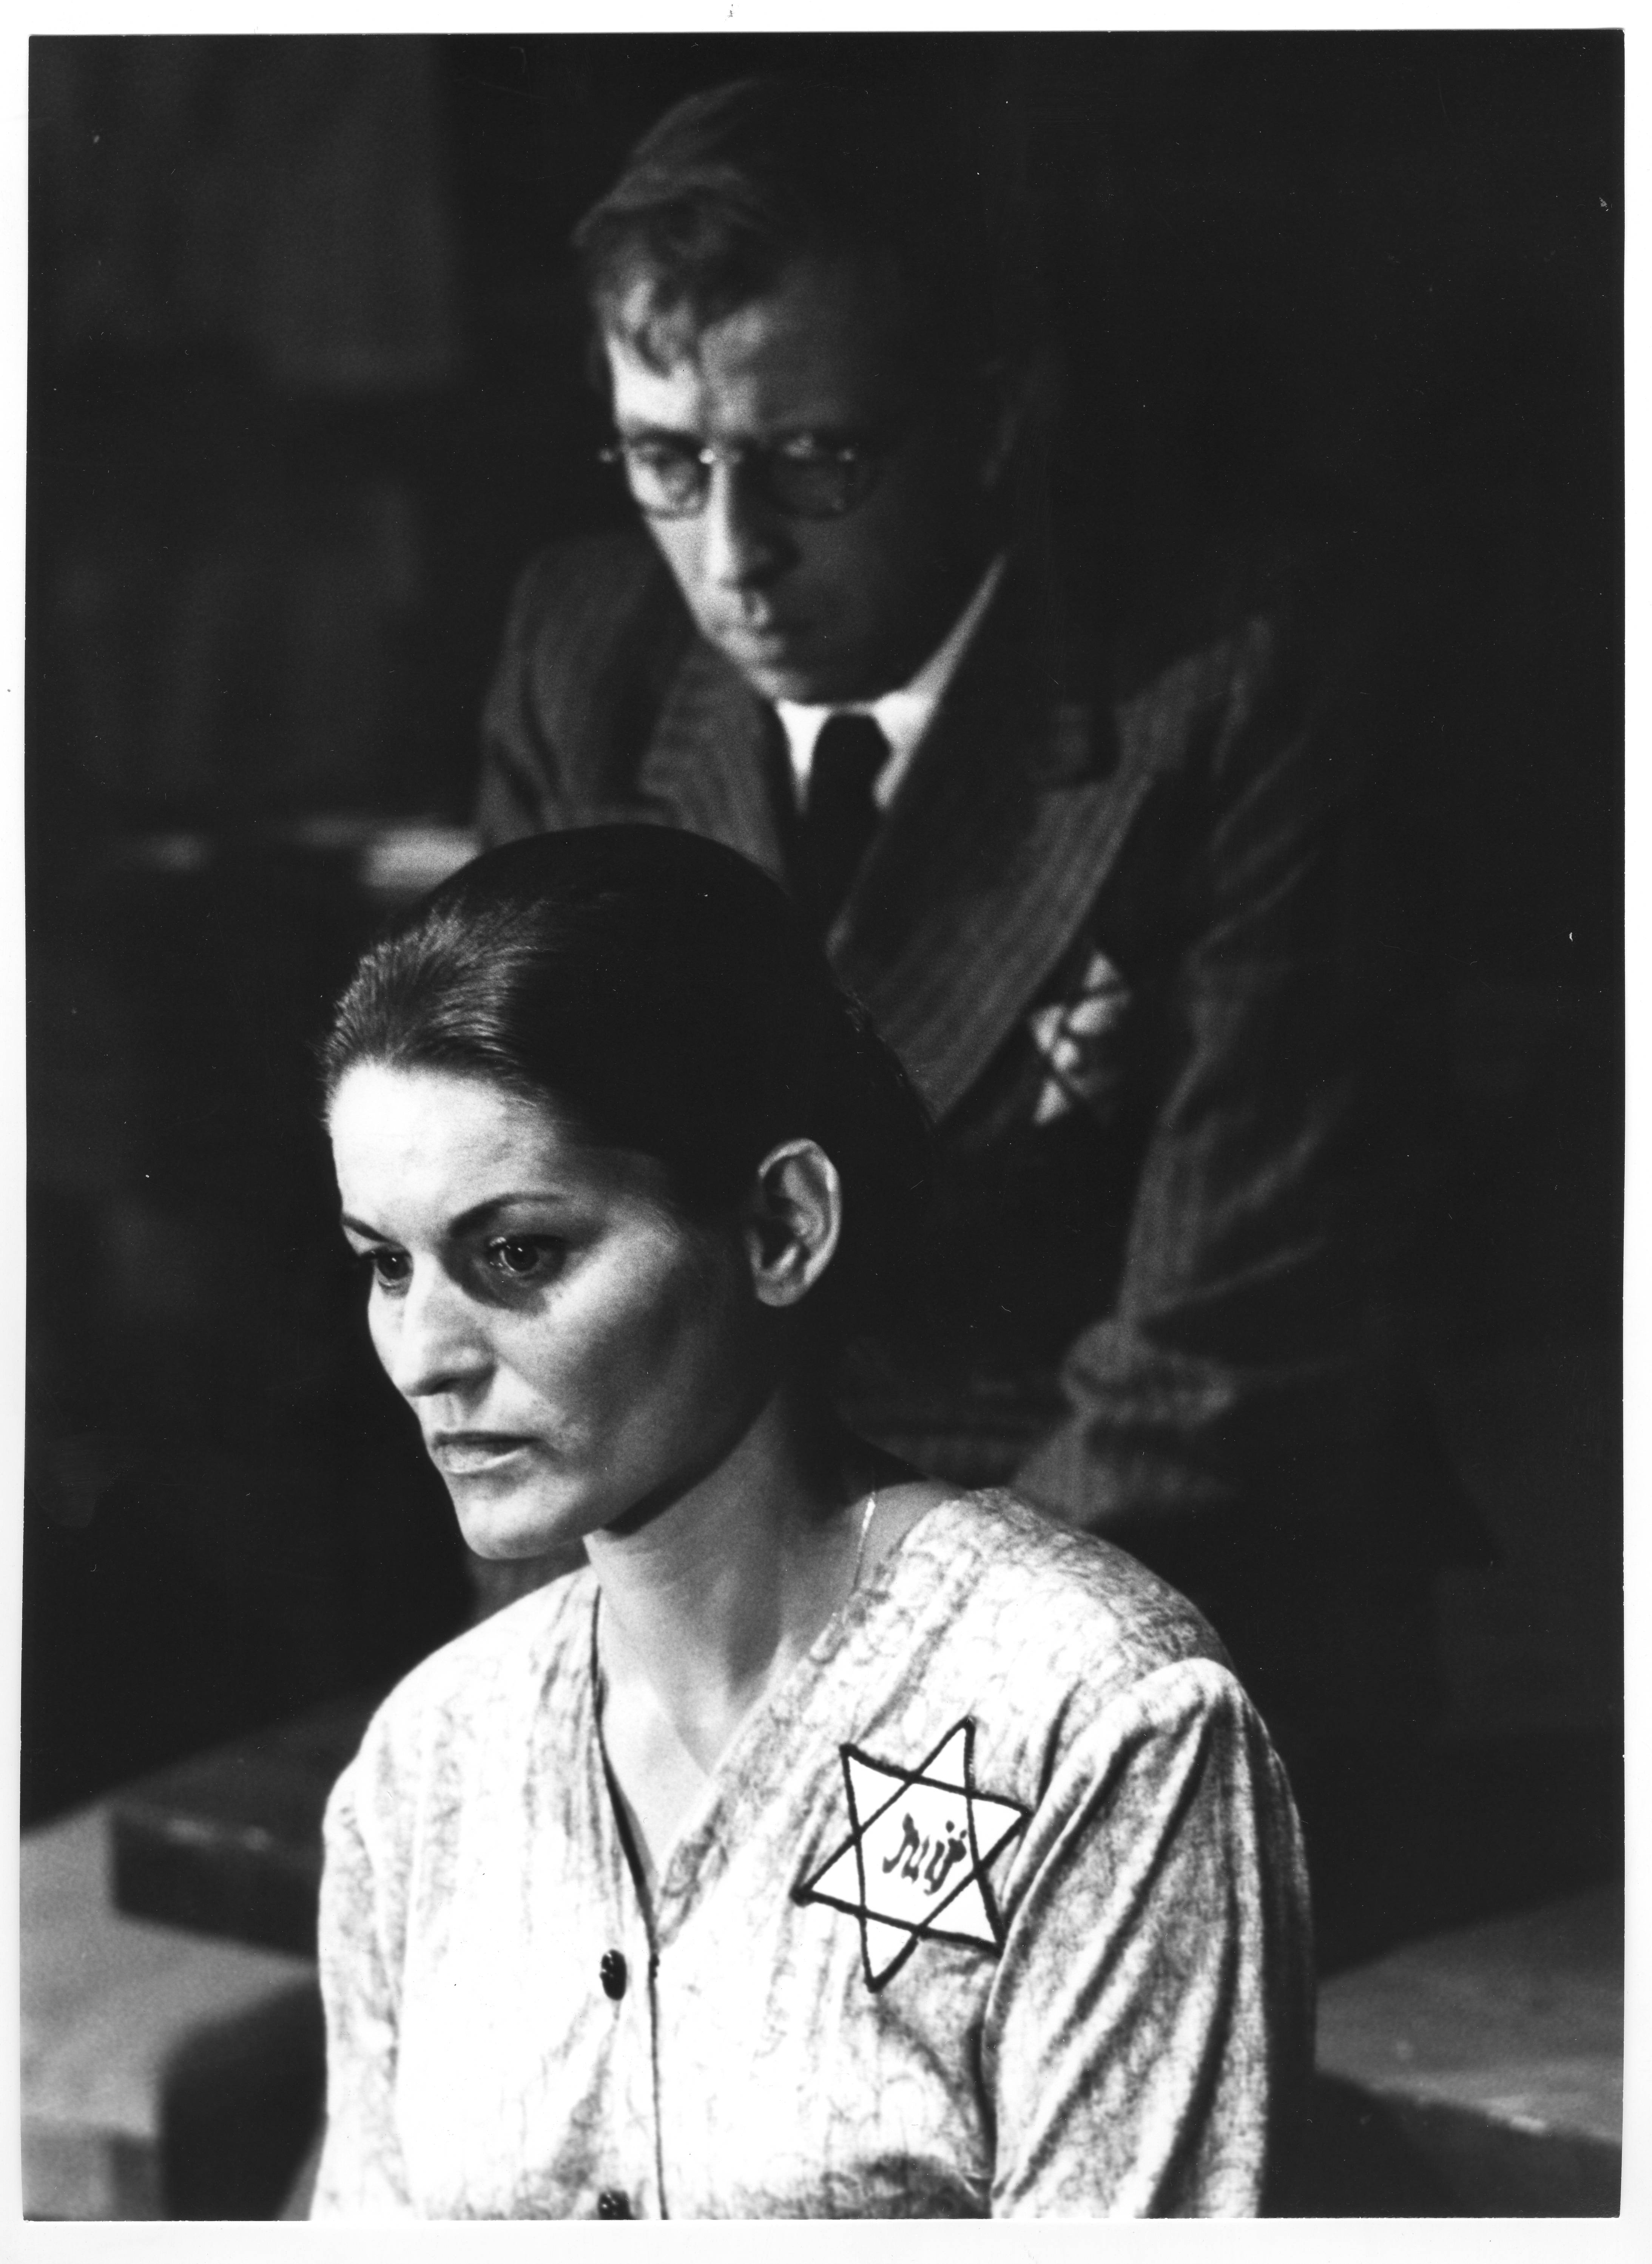 Géo Lachat et Claude Petitpierre dans Joël Brand de Heinar Kipphardt - Mise en scène Hubert Gignoux - 1966-1967